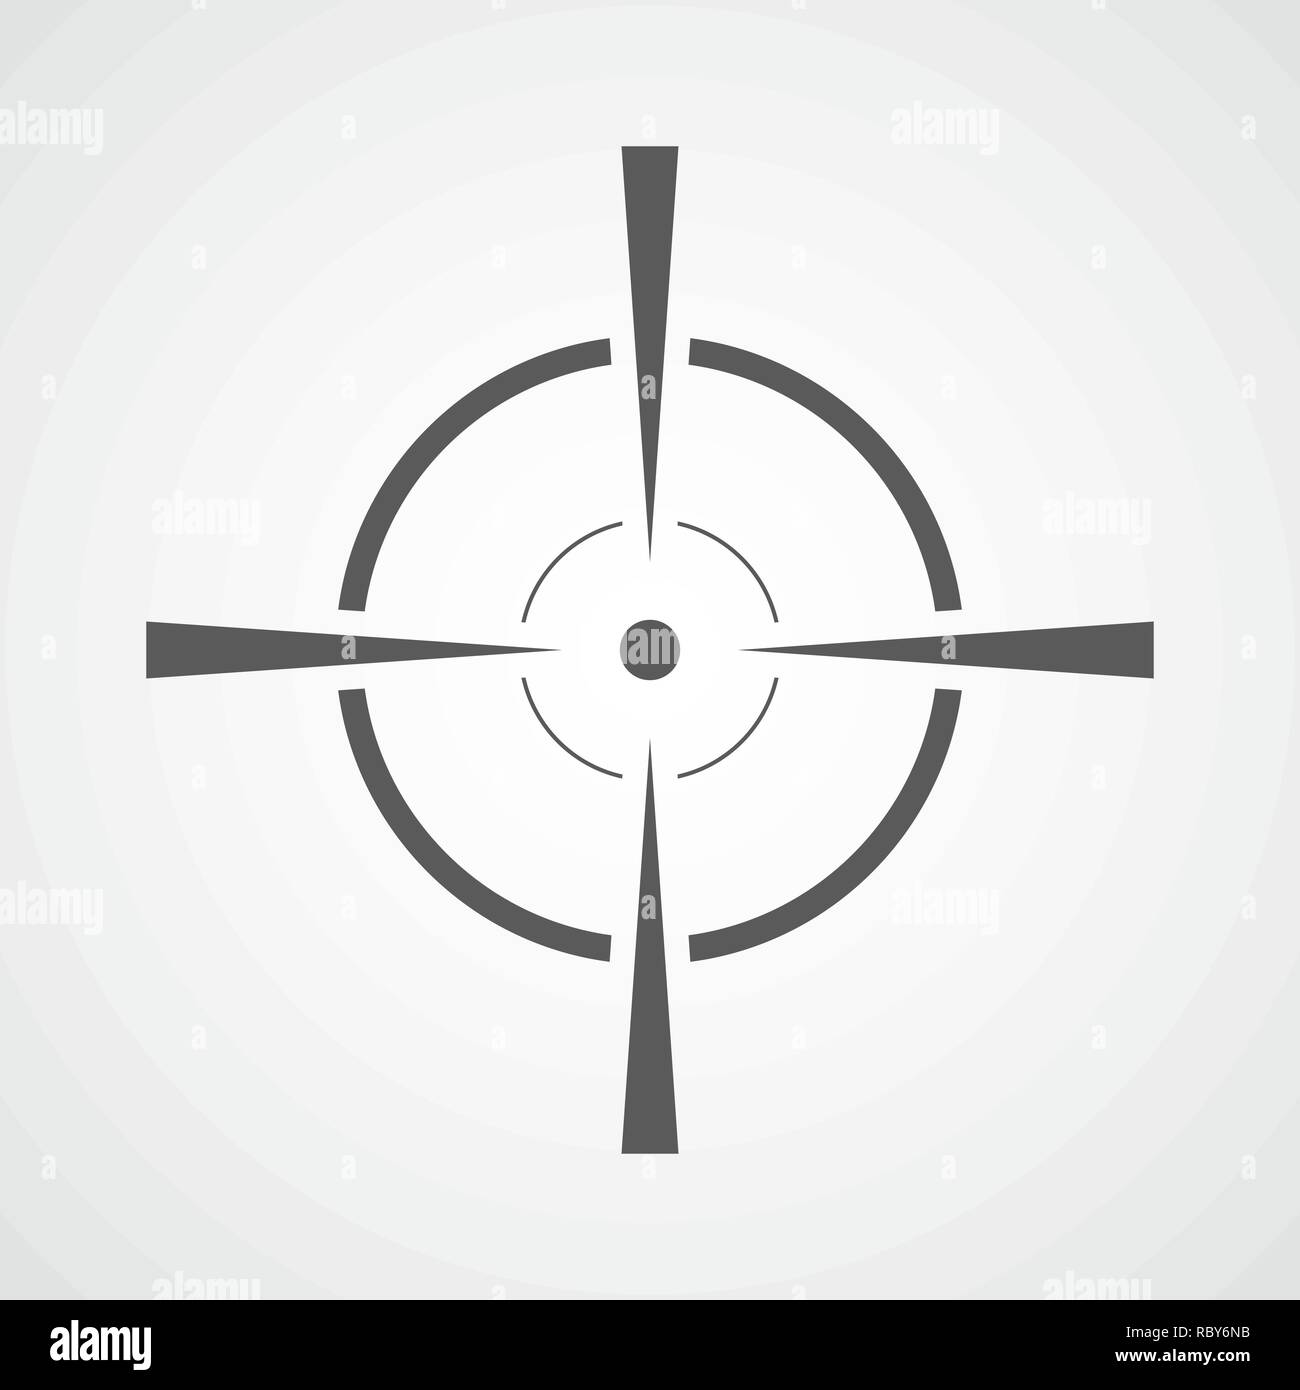 Aim-Symbol im flachen Design. Vector Illustration. Grau Ziel Zeichen auf hellem Hintergrund Stock Vektor